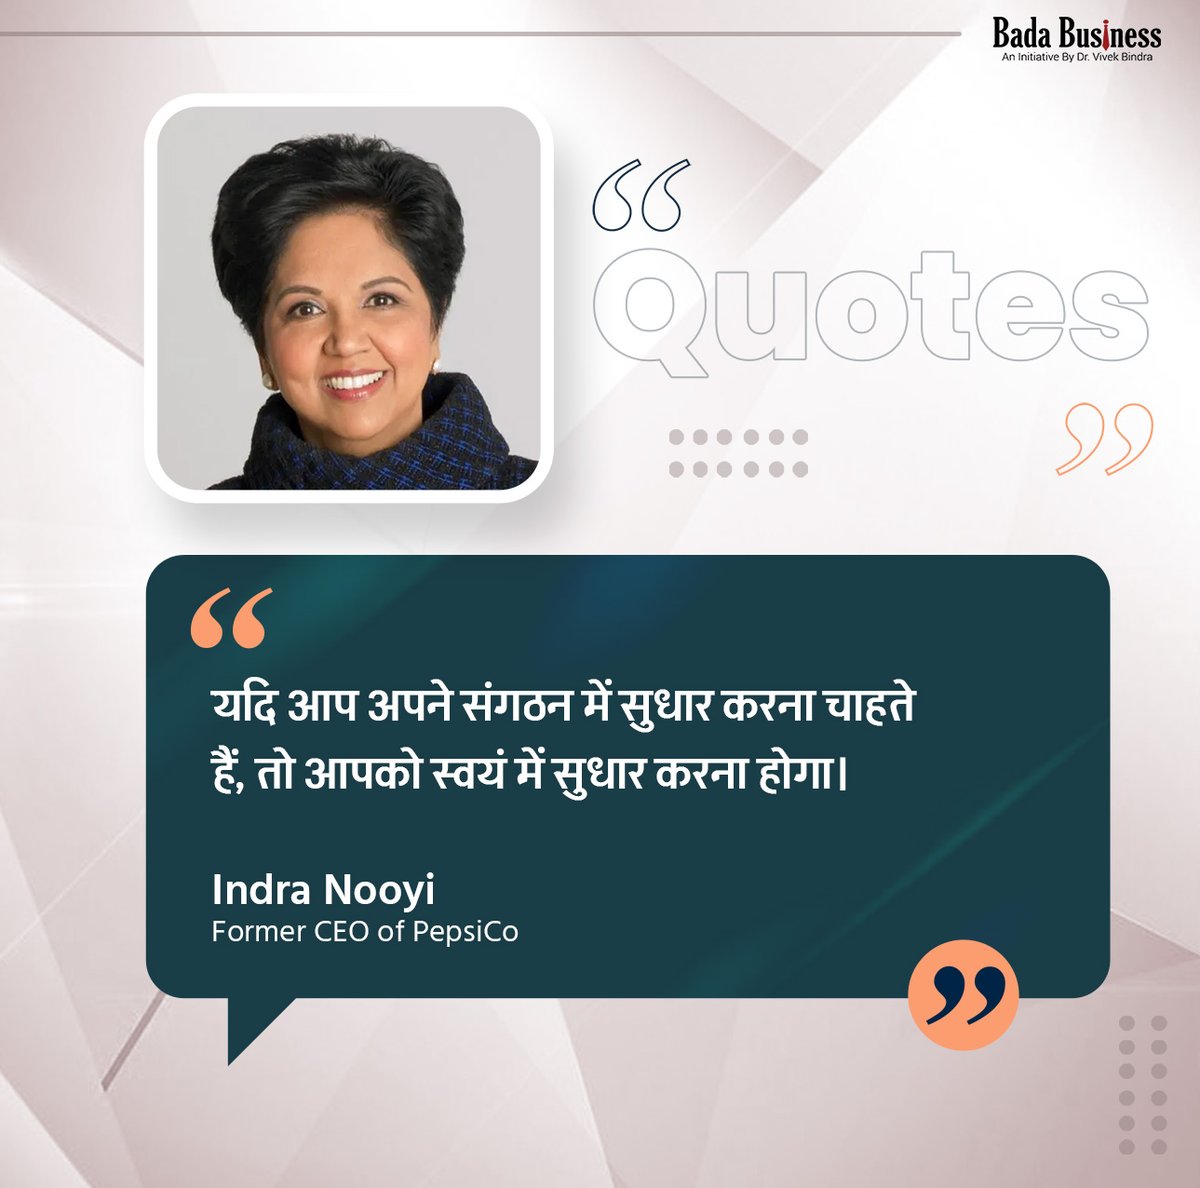 किसी भी सुधार की शुरुआत खुद से की जाती है।

#IndraNooyi #LeadersWisdom #Motivation #DrVivekBindra #BadaBusiness